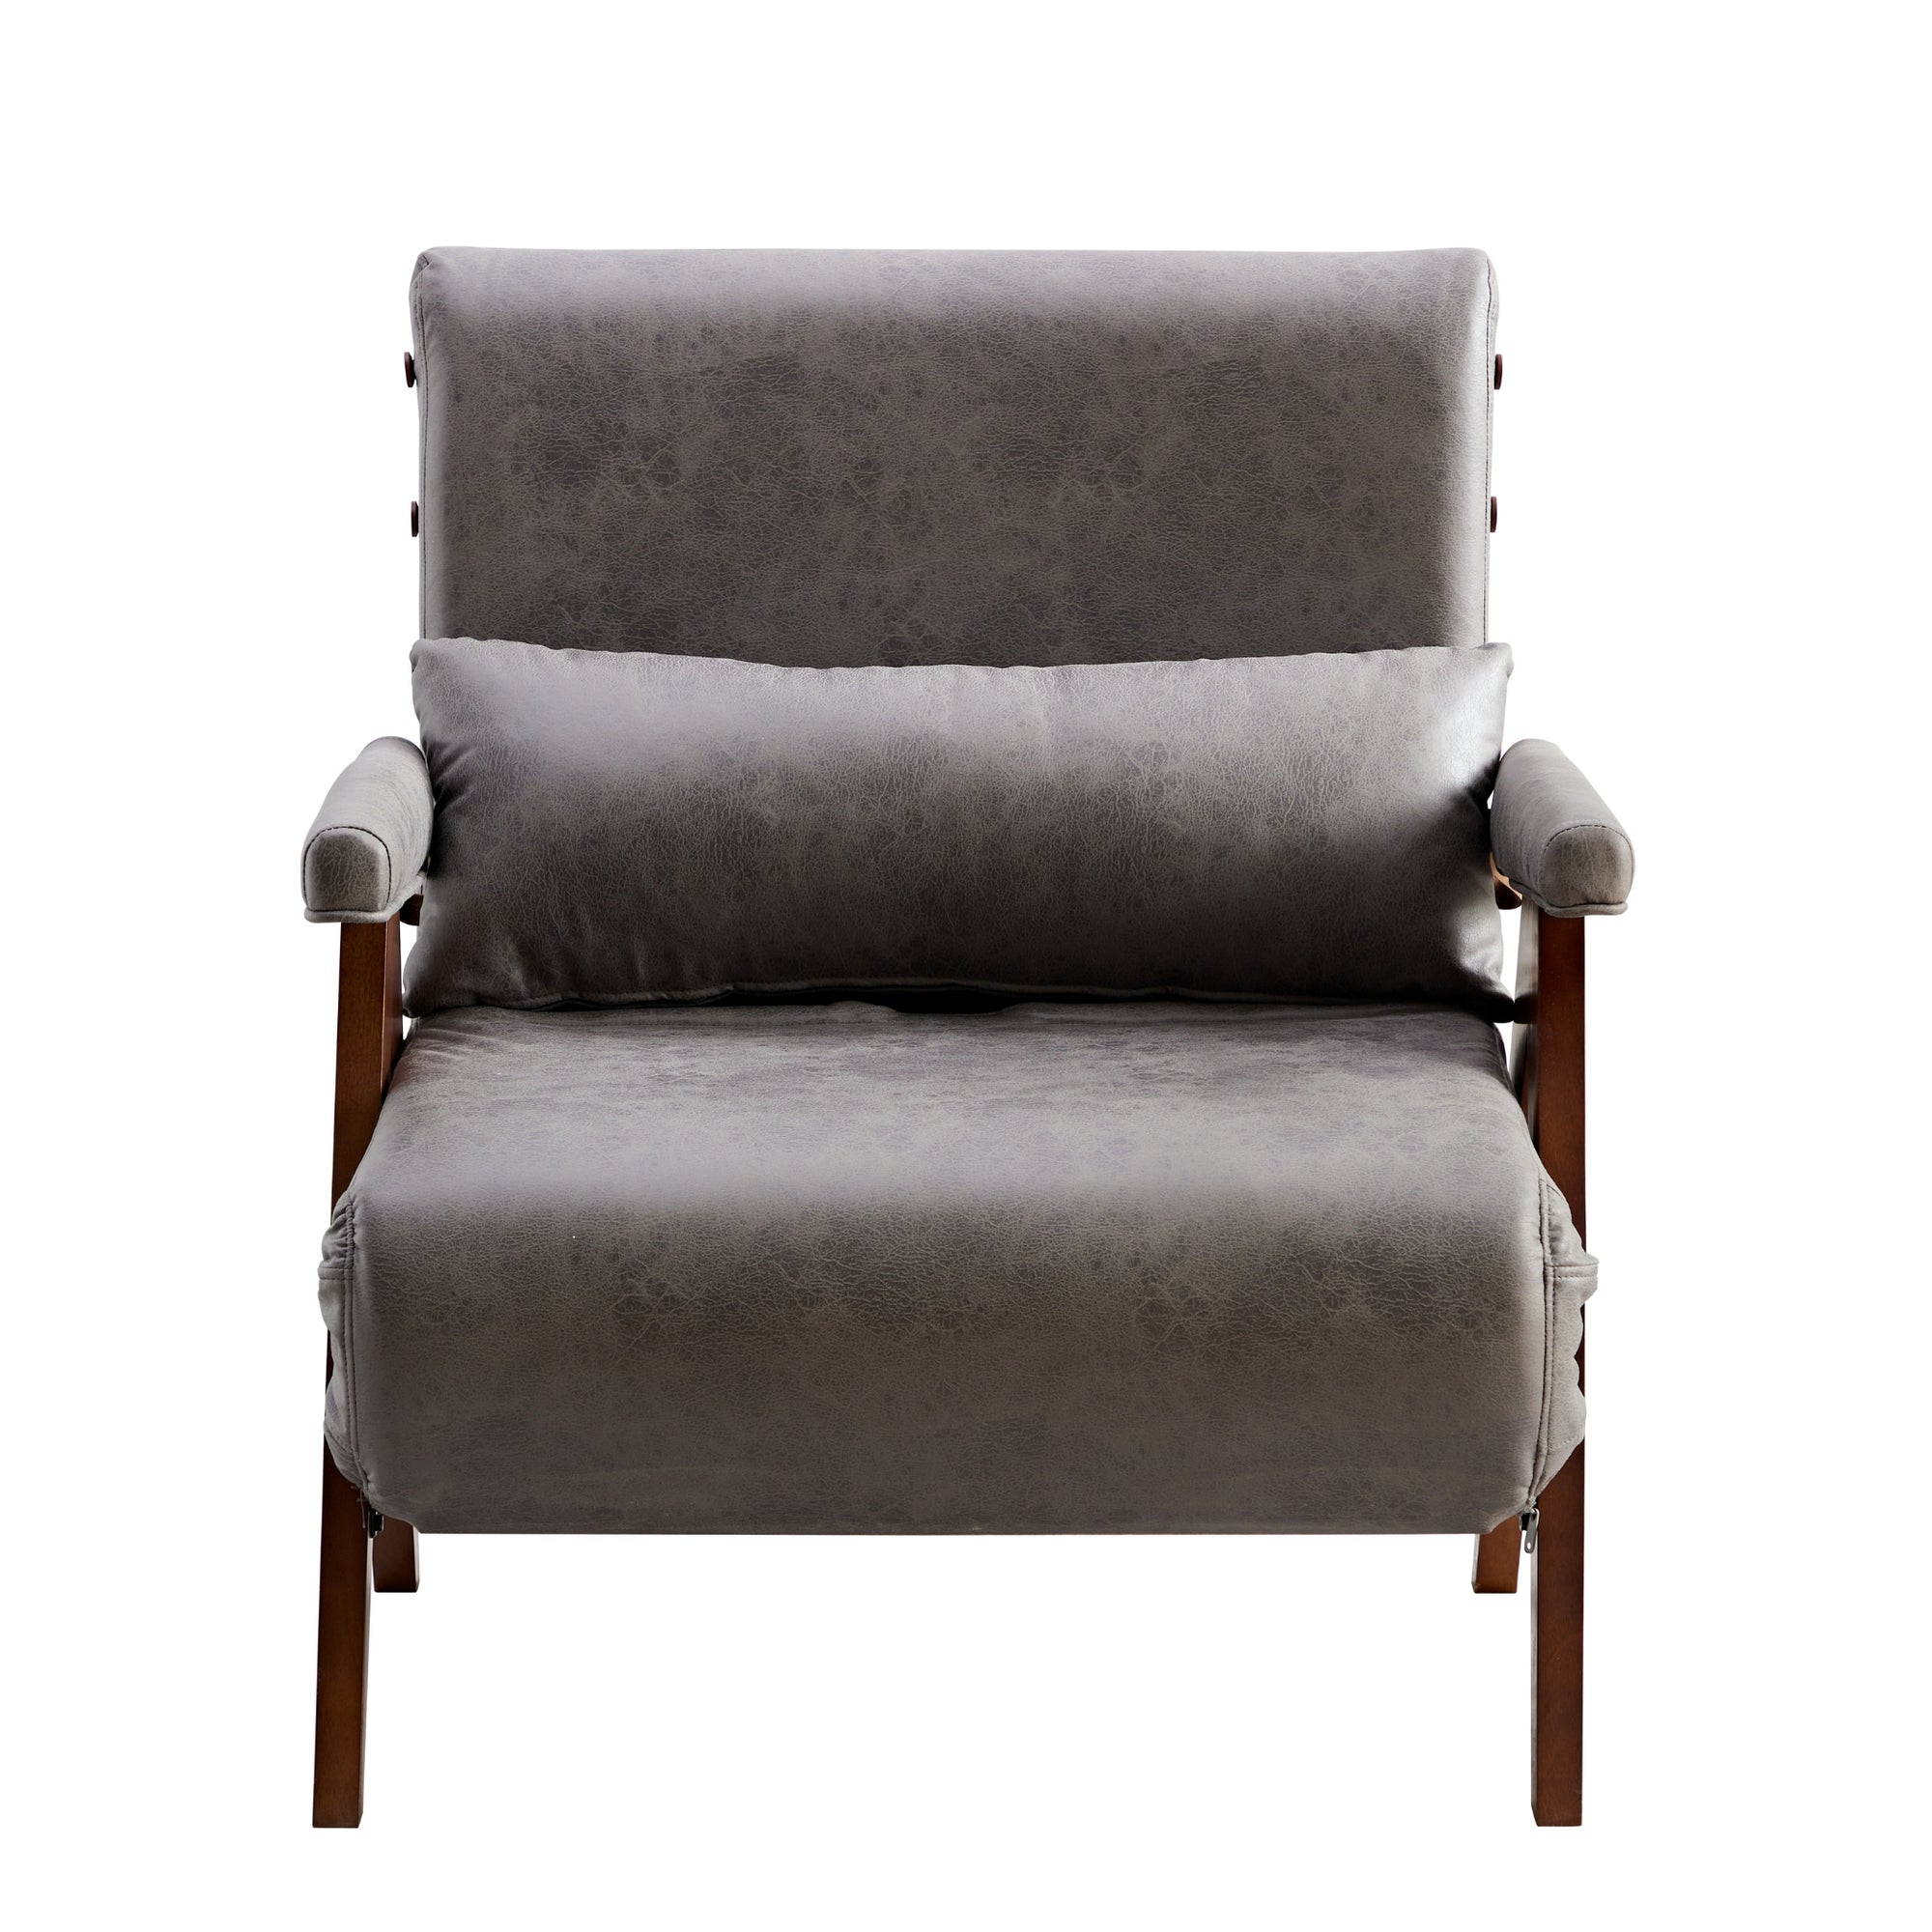 Ariton Tri-Fold Sleeper Convertible Chair.